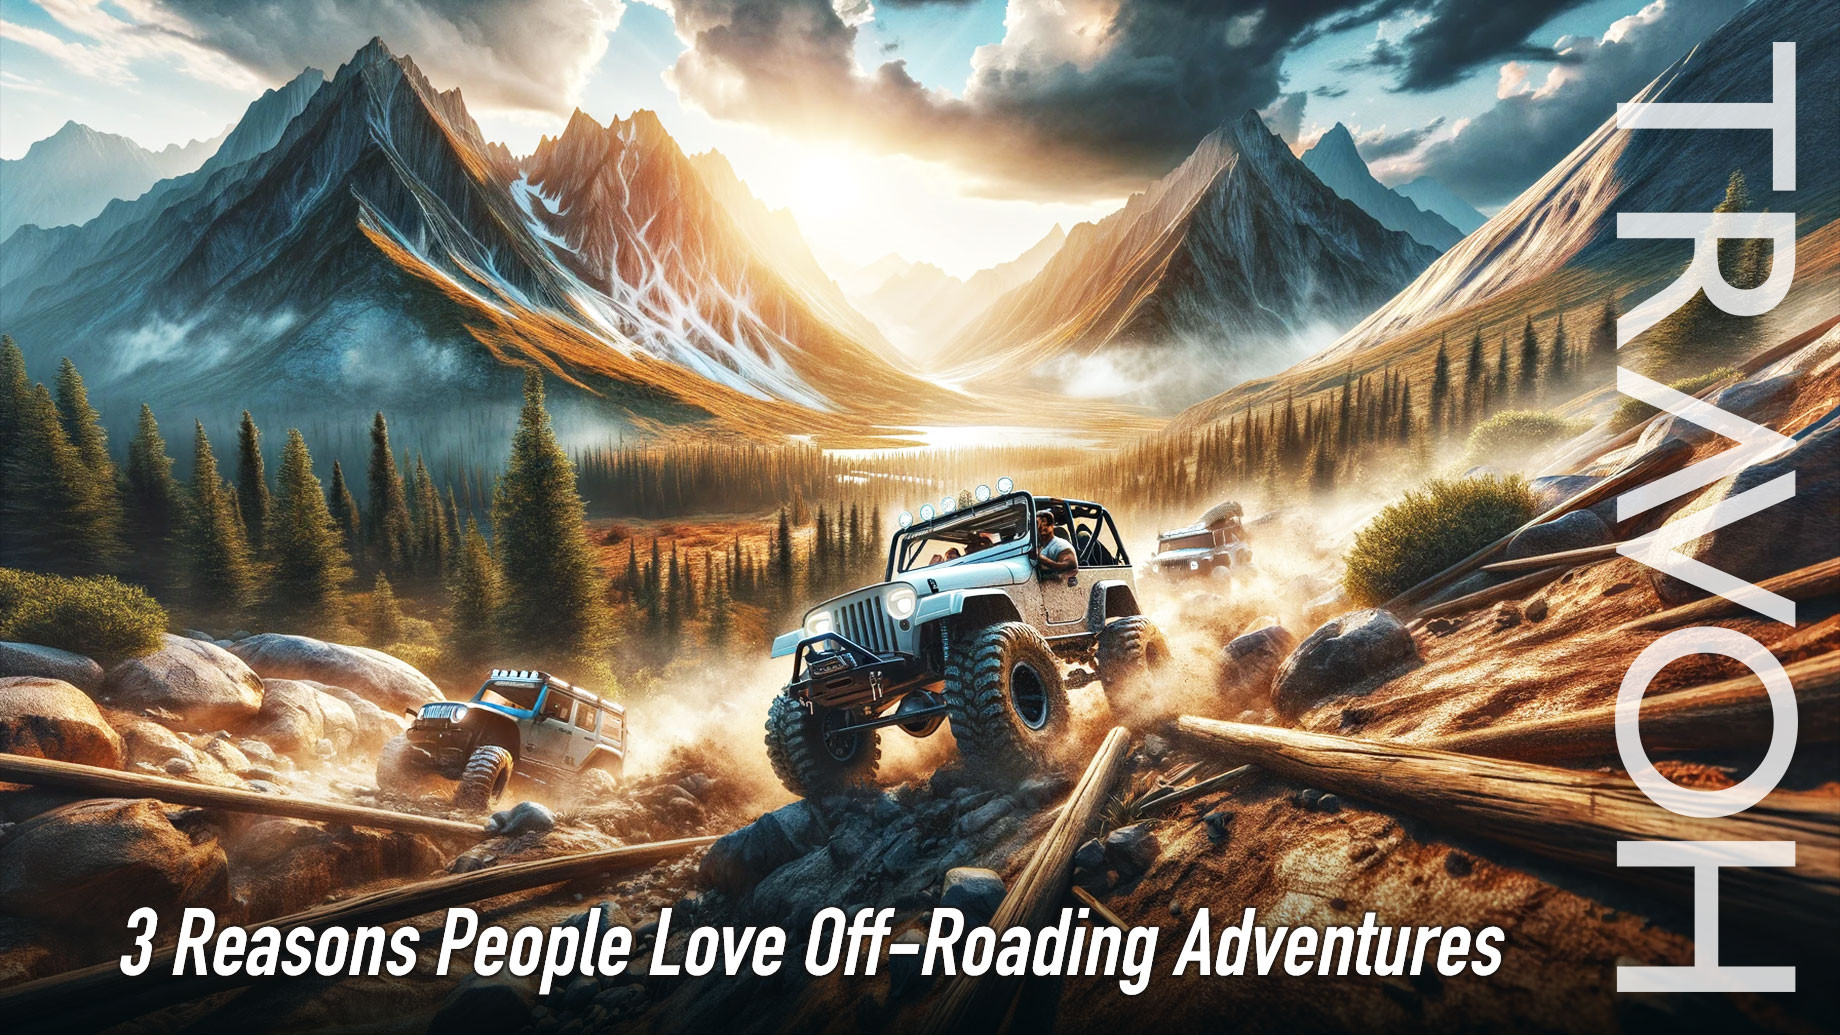 3 Reasons People Love Off-Roading Adventures